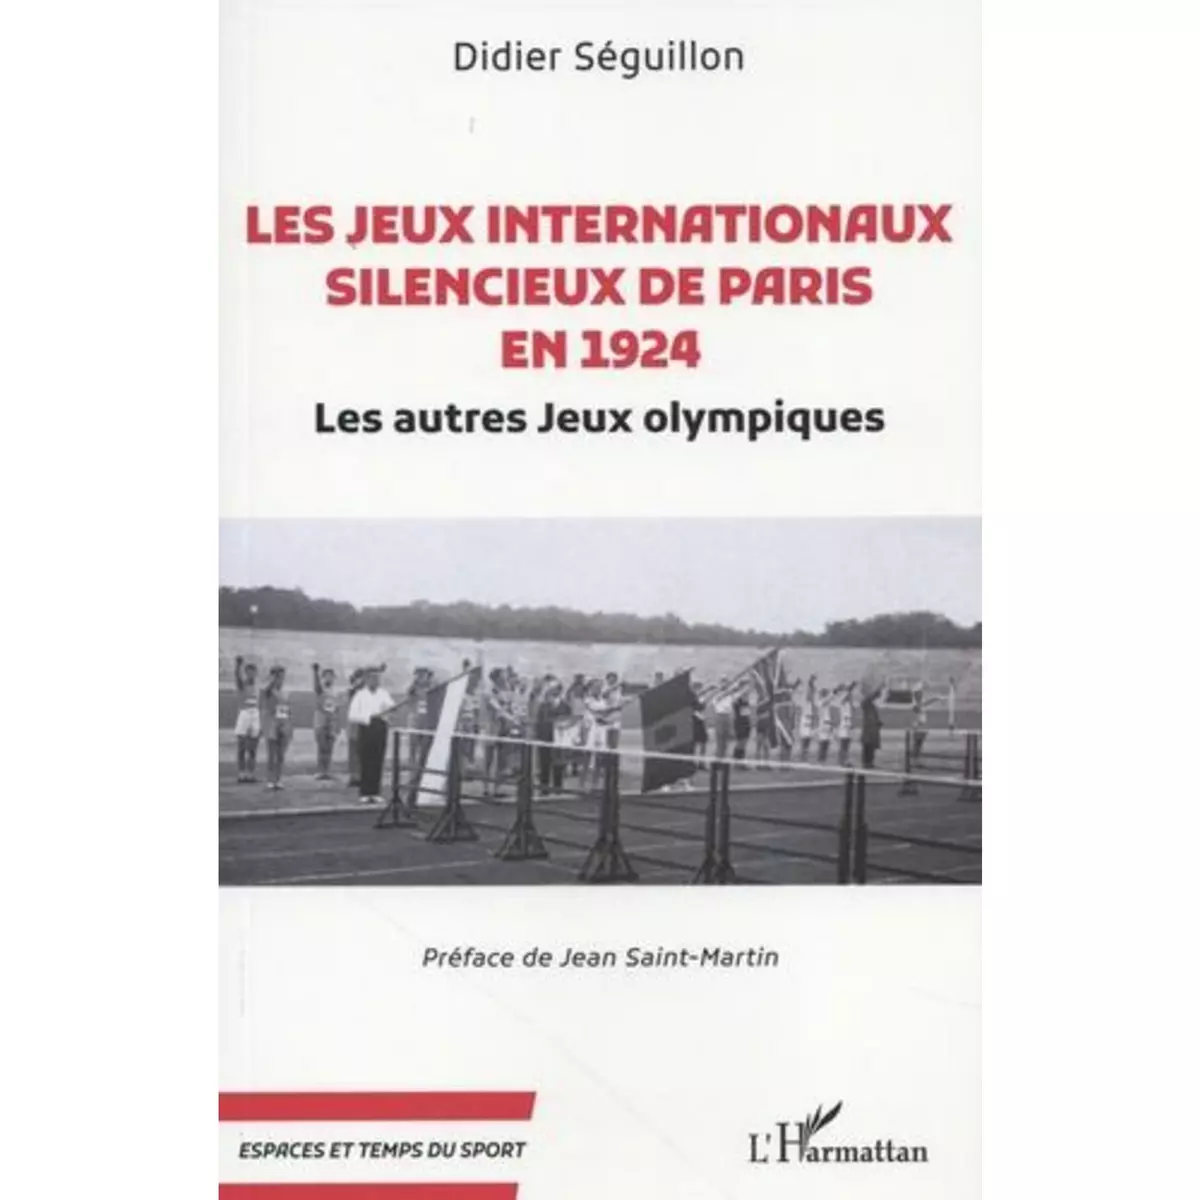  LES JEUX INTERNATIONAUX SILENCIEUX DE PARIS EN 1924. LES AUTRES JEUX OLYMPIQUES, Séguillon Didier